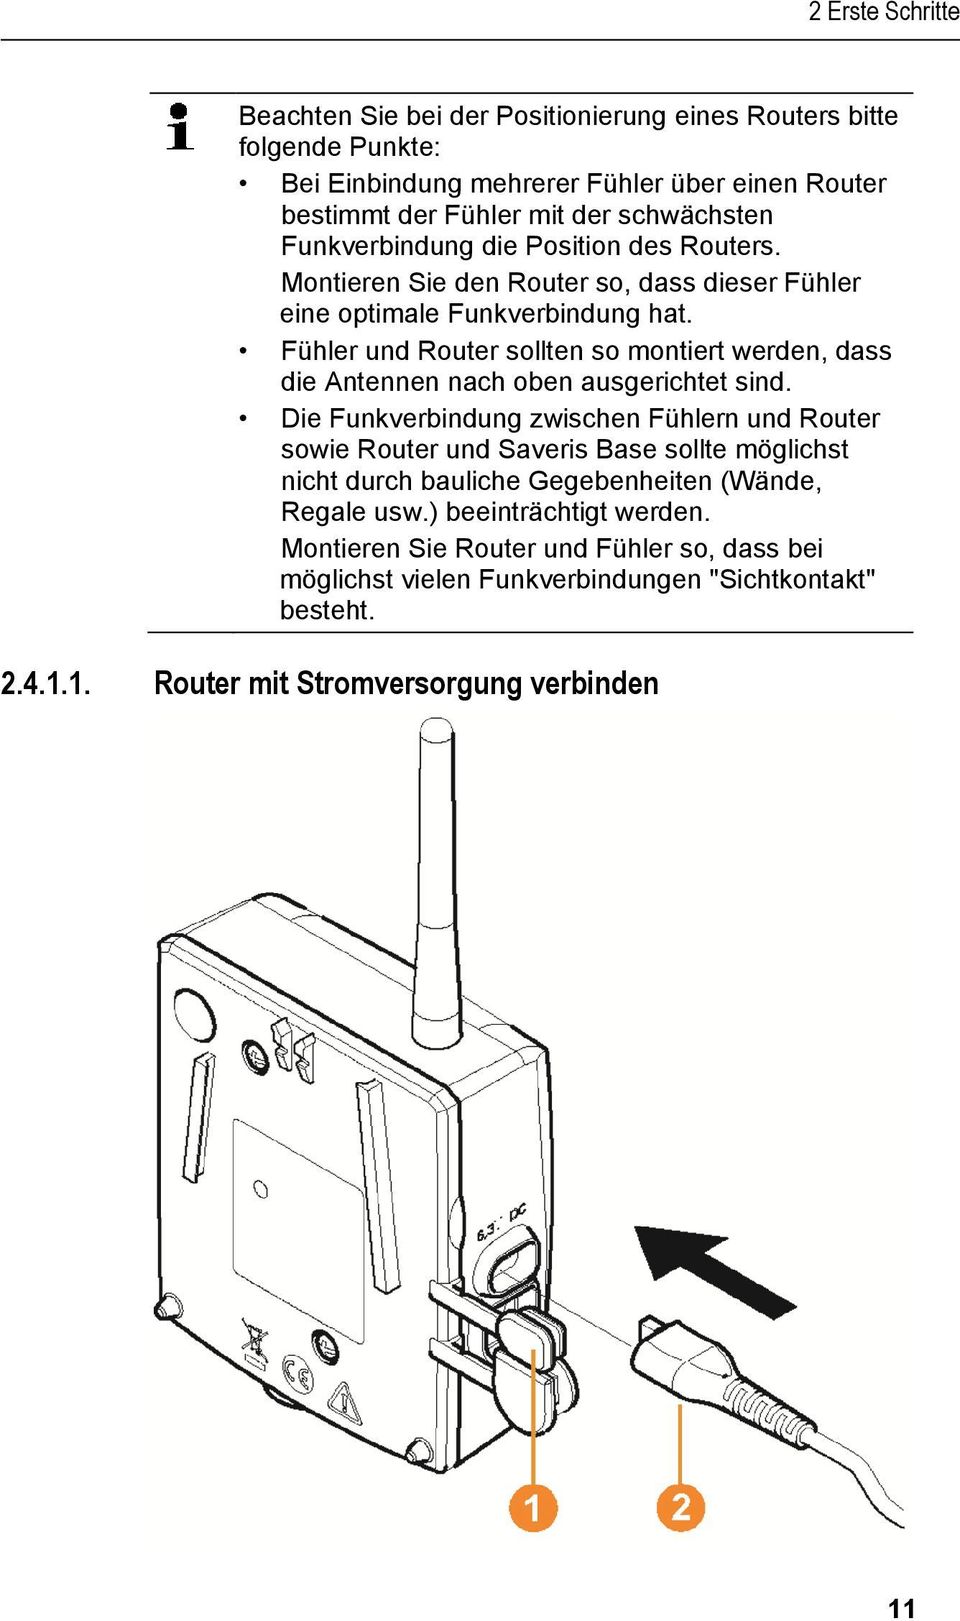 Funkverbindung die Position des Routers. Montieren Sie den Router so, dass dieser Fühler eine optimale Funkverbindung hat.